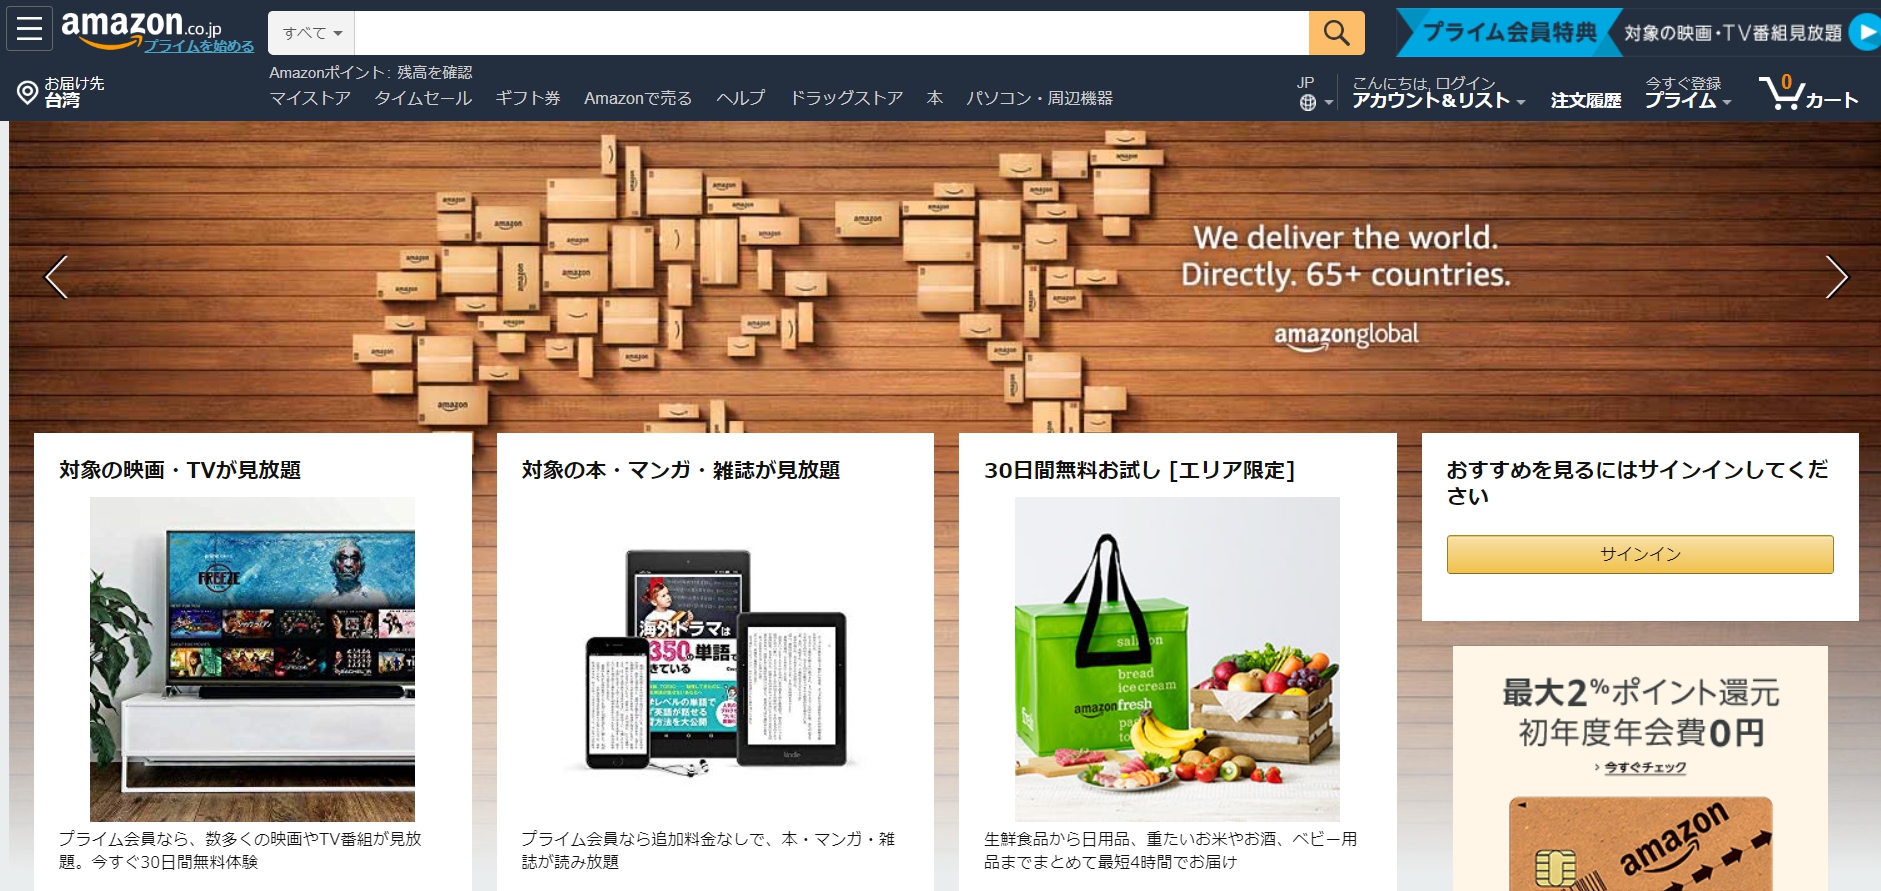 日本亞馬遜amazon Japan購物教學 註冊帳號 轉運寄台灣你該注意哪些事情呢 窩日本wow Japan